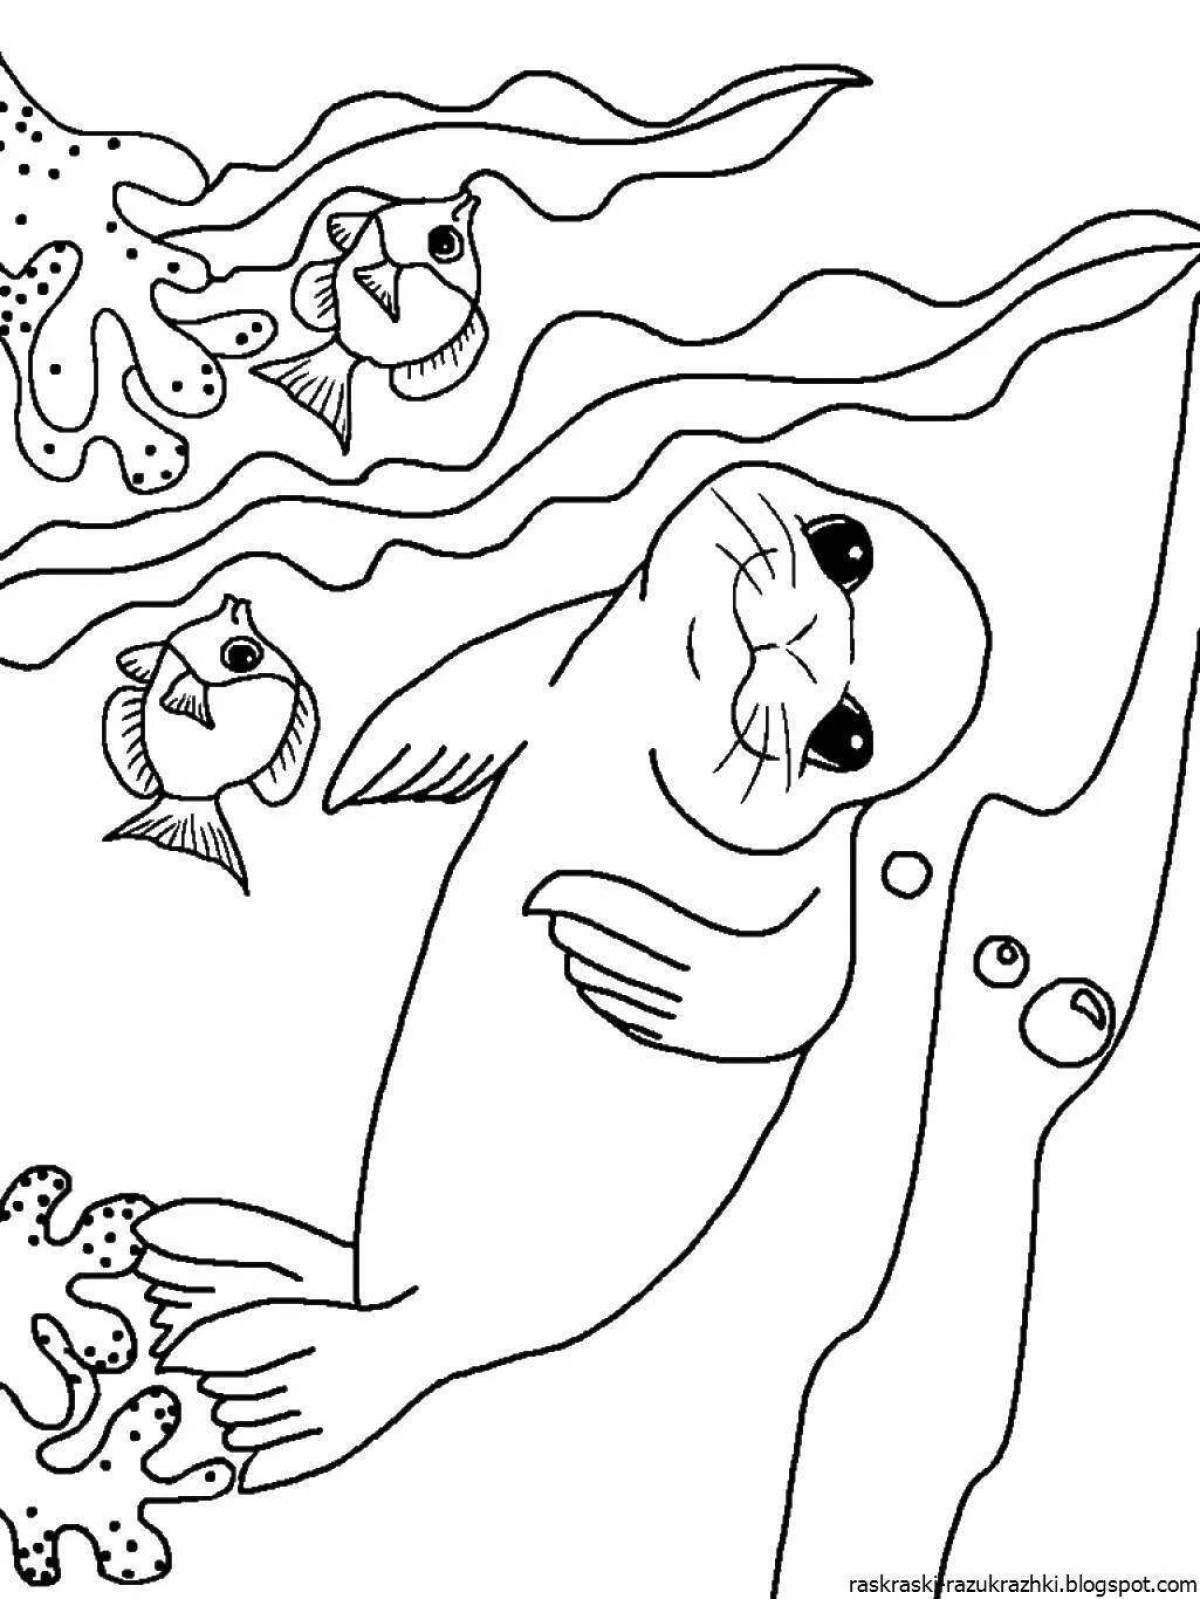 Динамическая страница раскраски морских животных для детей